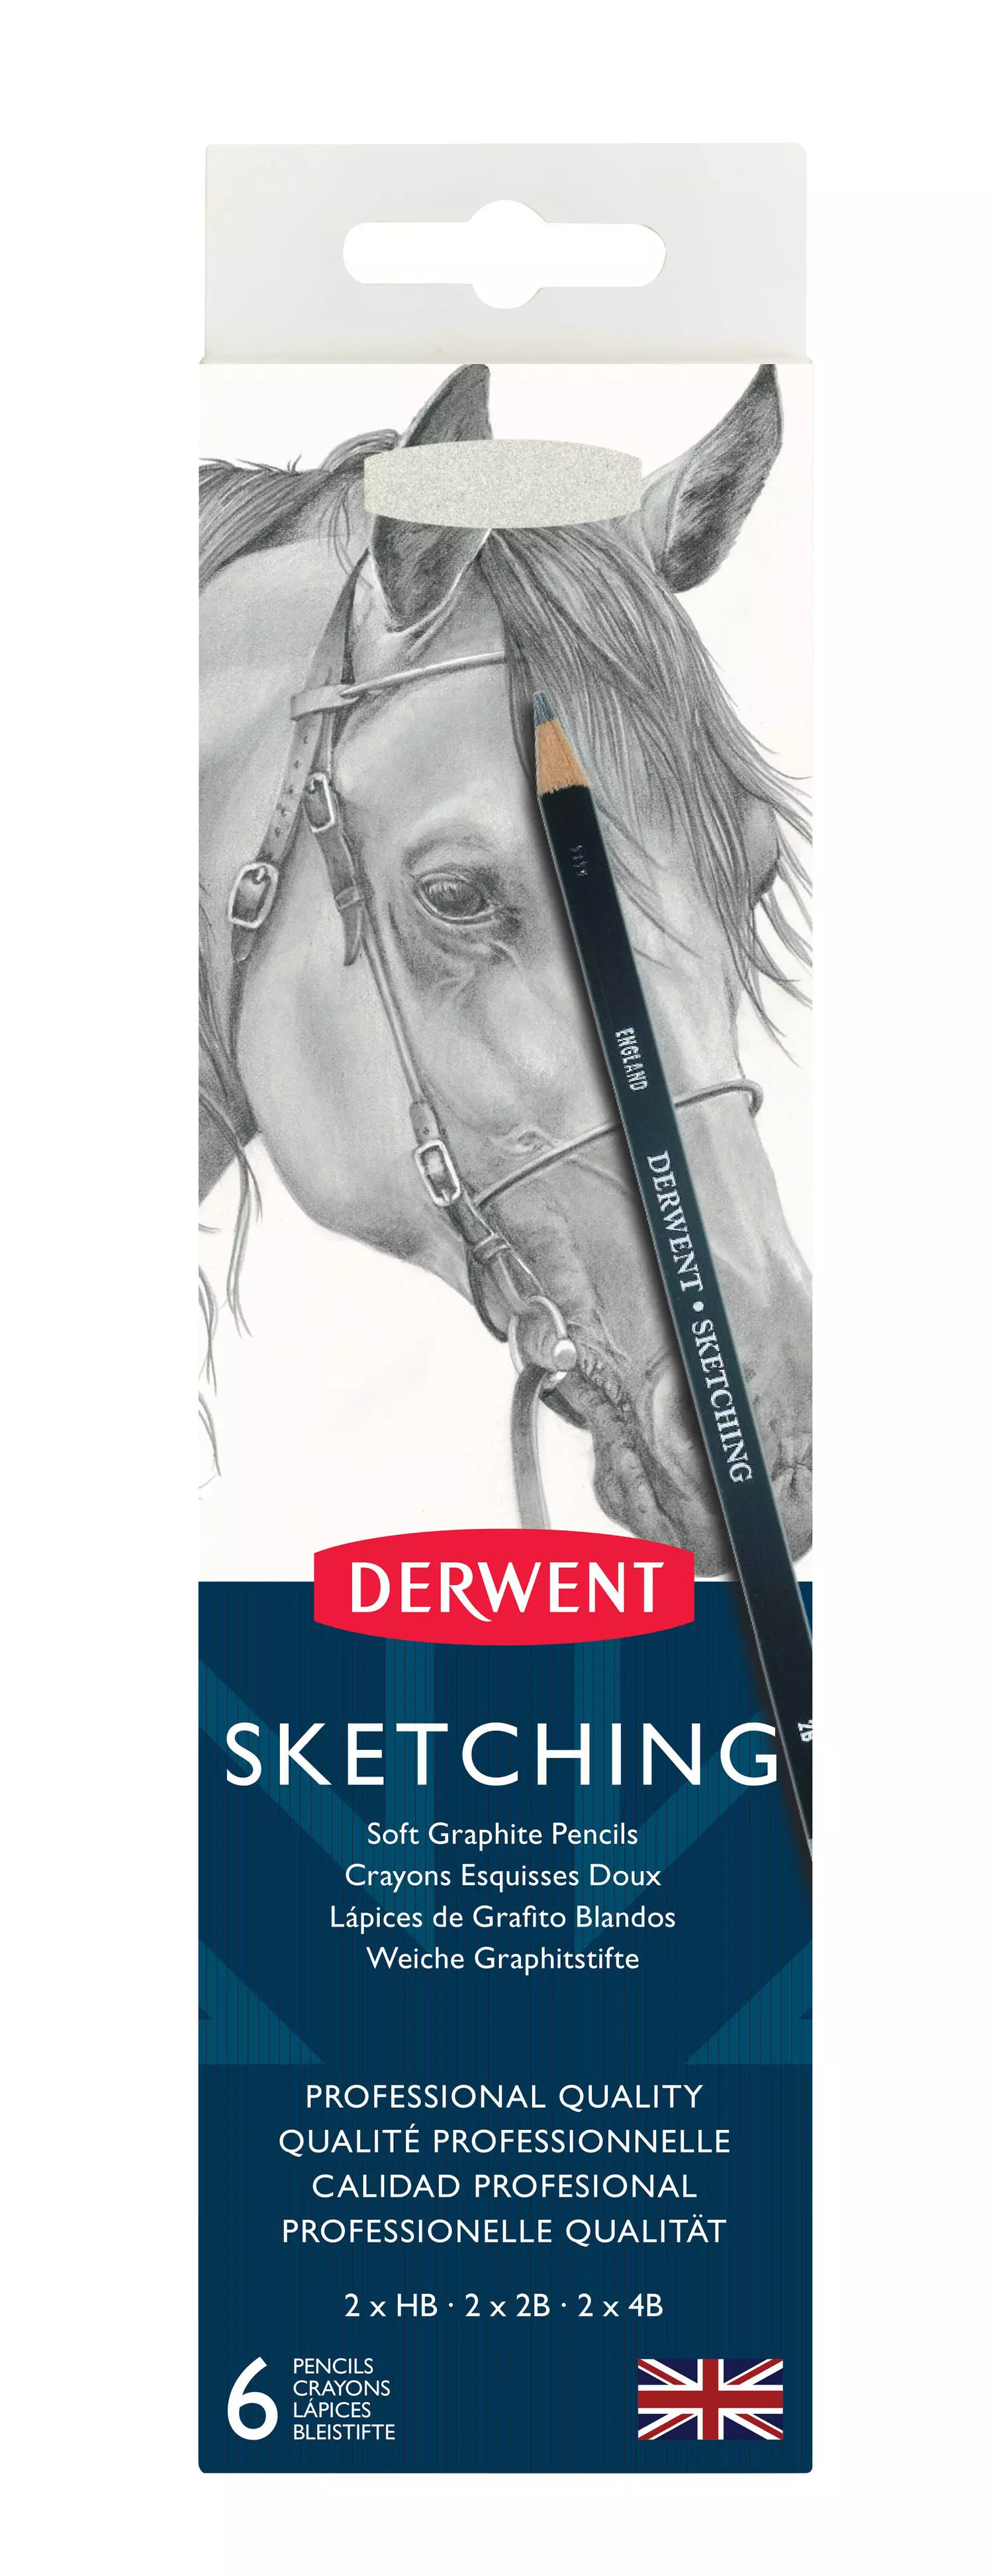 Derwent Sketching Pencils Tin Pcs 601032